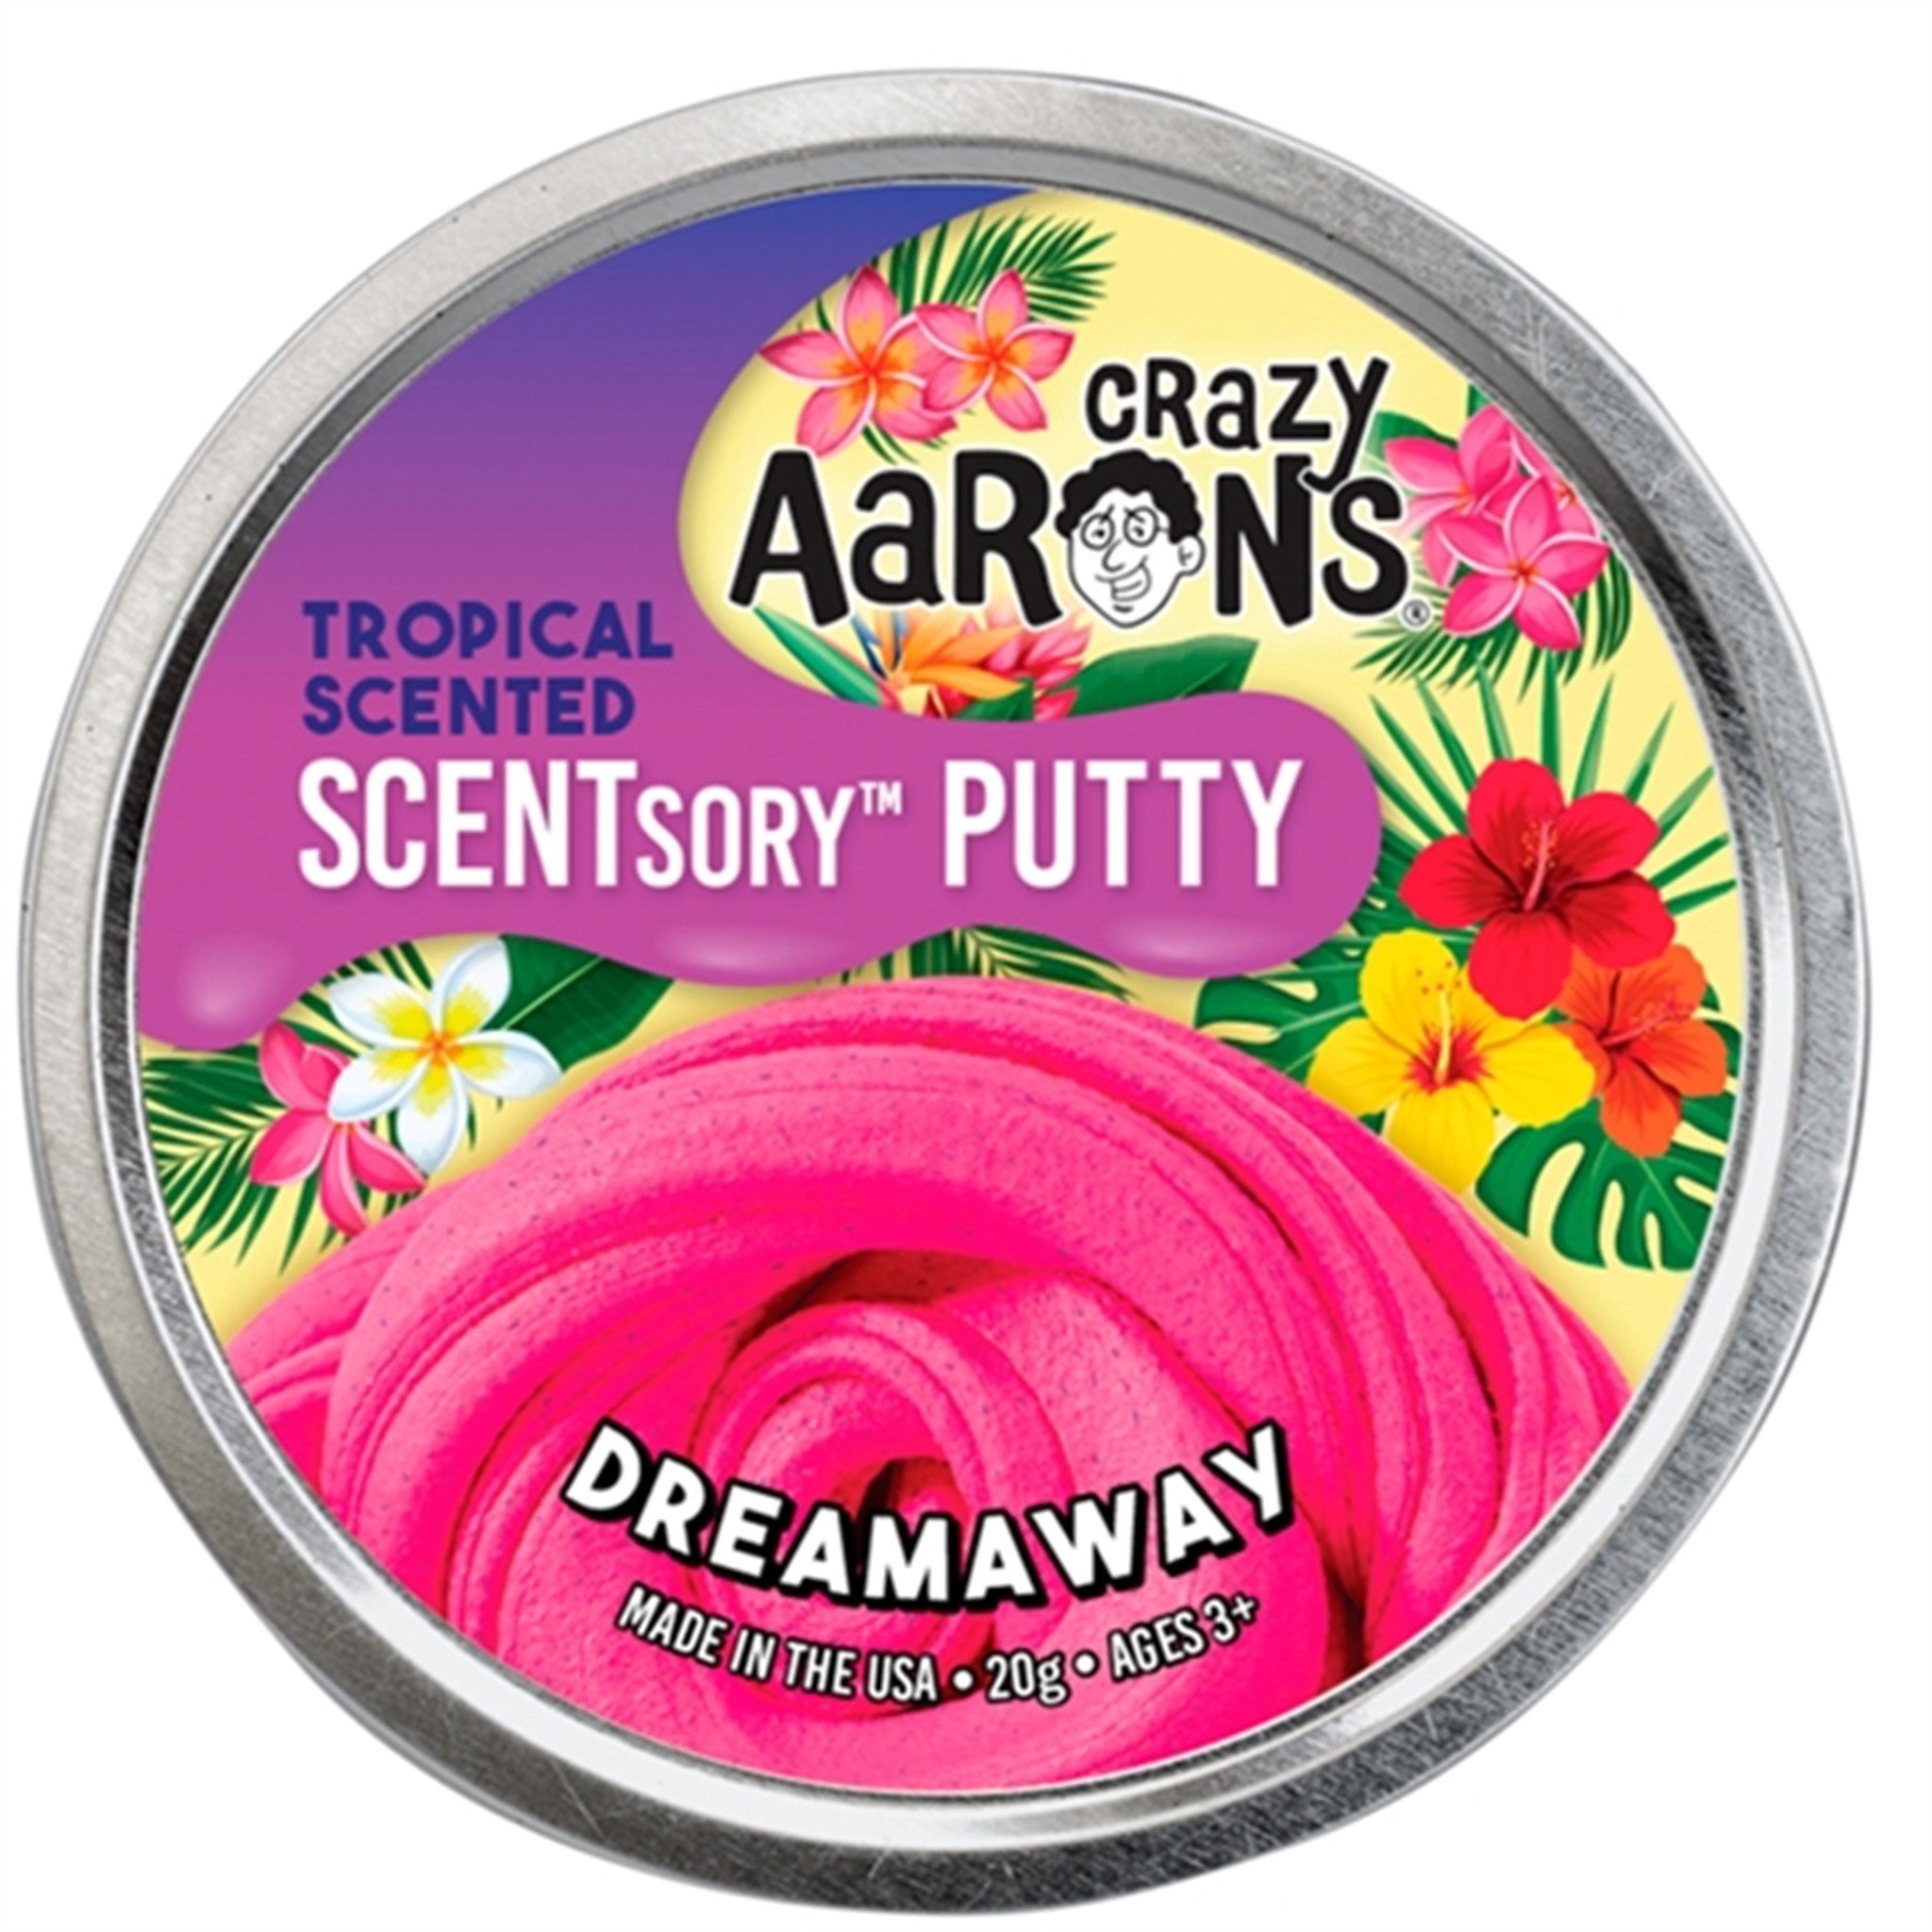 Crazy Aaron's® Slim - Scentsory Putty - Dreamaway